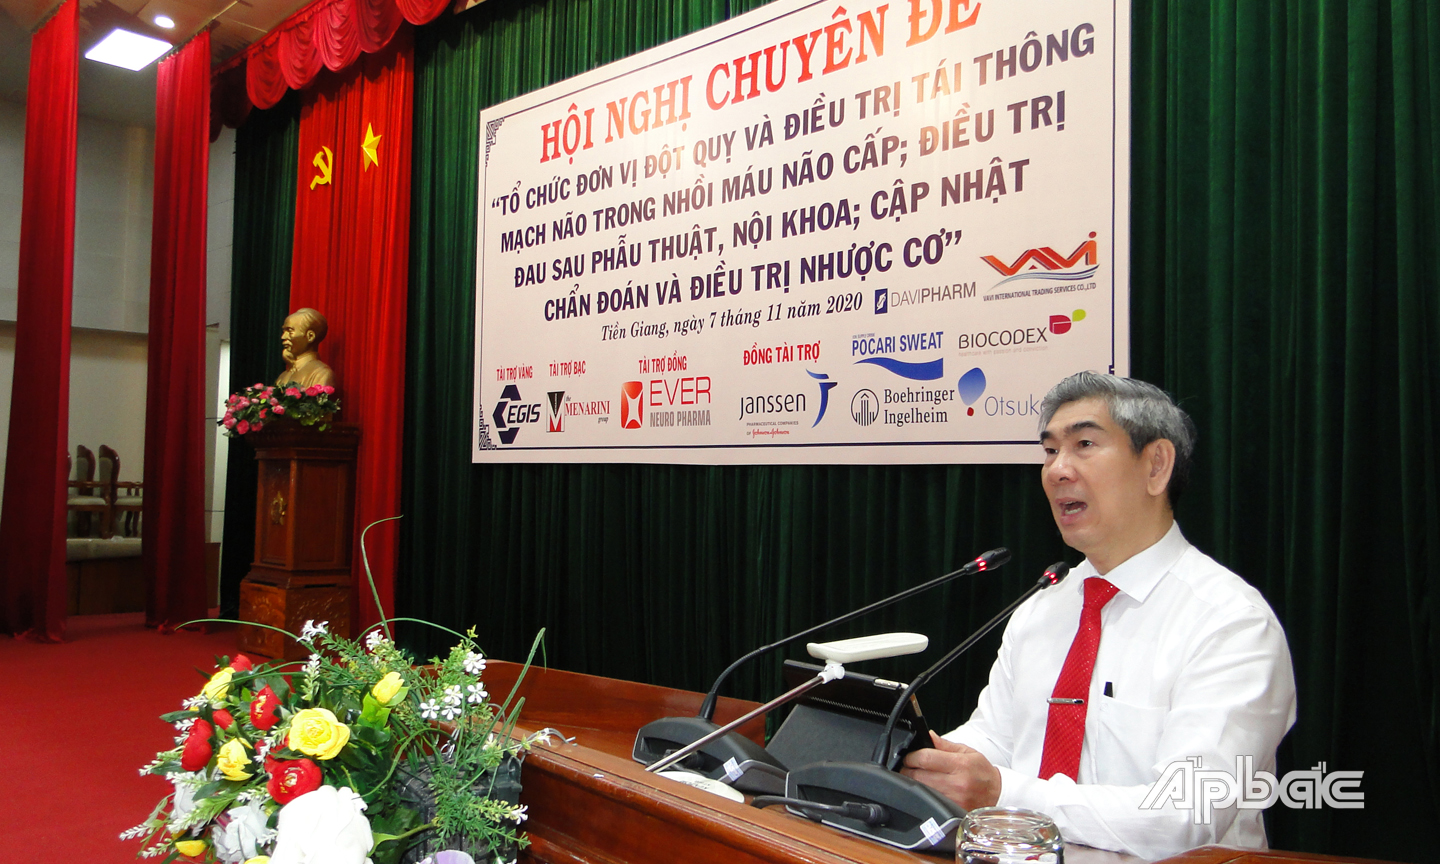 BSCKII Trần Thanh Thảo, Giám đốc Sở Y tế  Tiền Giang đánh giá cao chương trình làm việc bô3 ích và khoa học của hội nghị